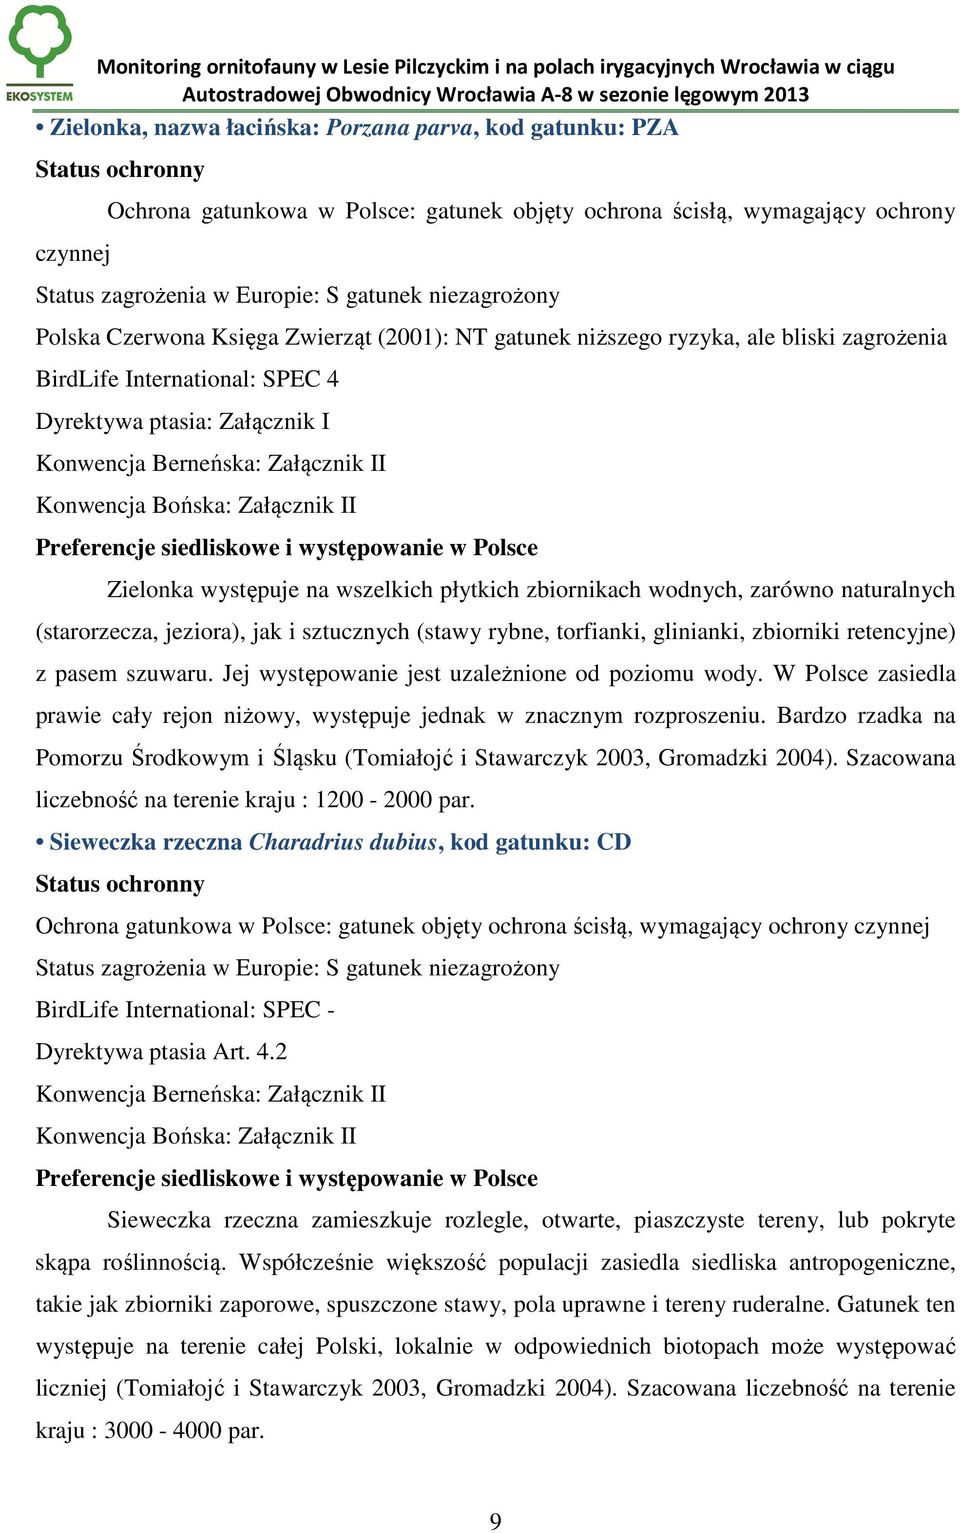 Konwencja Bońska: Załącznik II Preferencje siedliskowe i występowanie w Polsce Zielonka występuje na wszelkich płytkich zbiornikach wodnych, zarówno naturalnych (starorzecza, jeziora), jak i